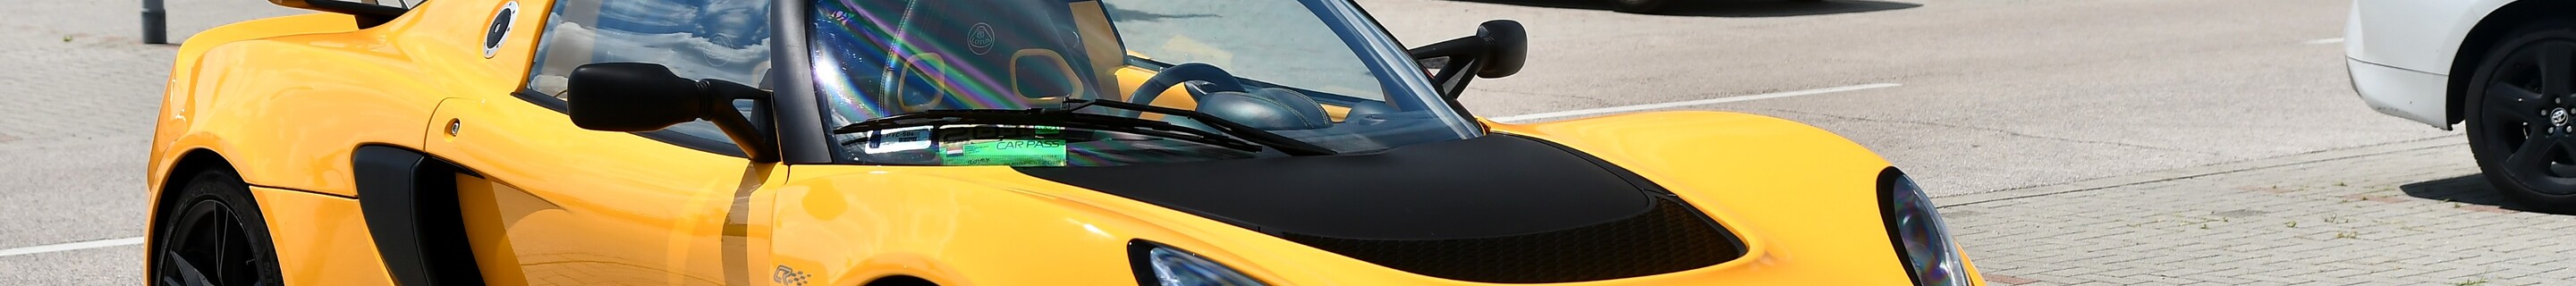 Lotus Exige S 2012 CR